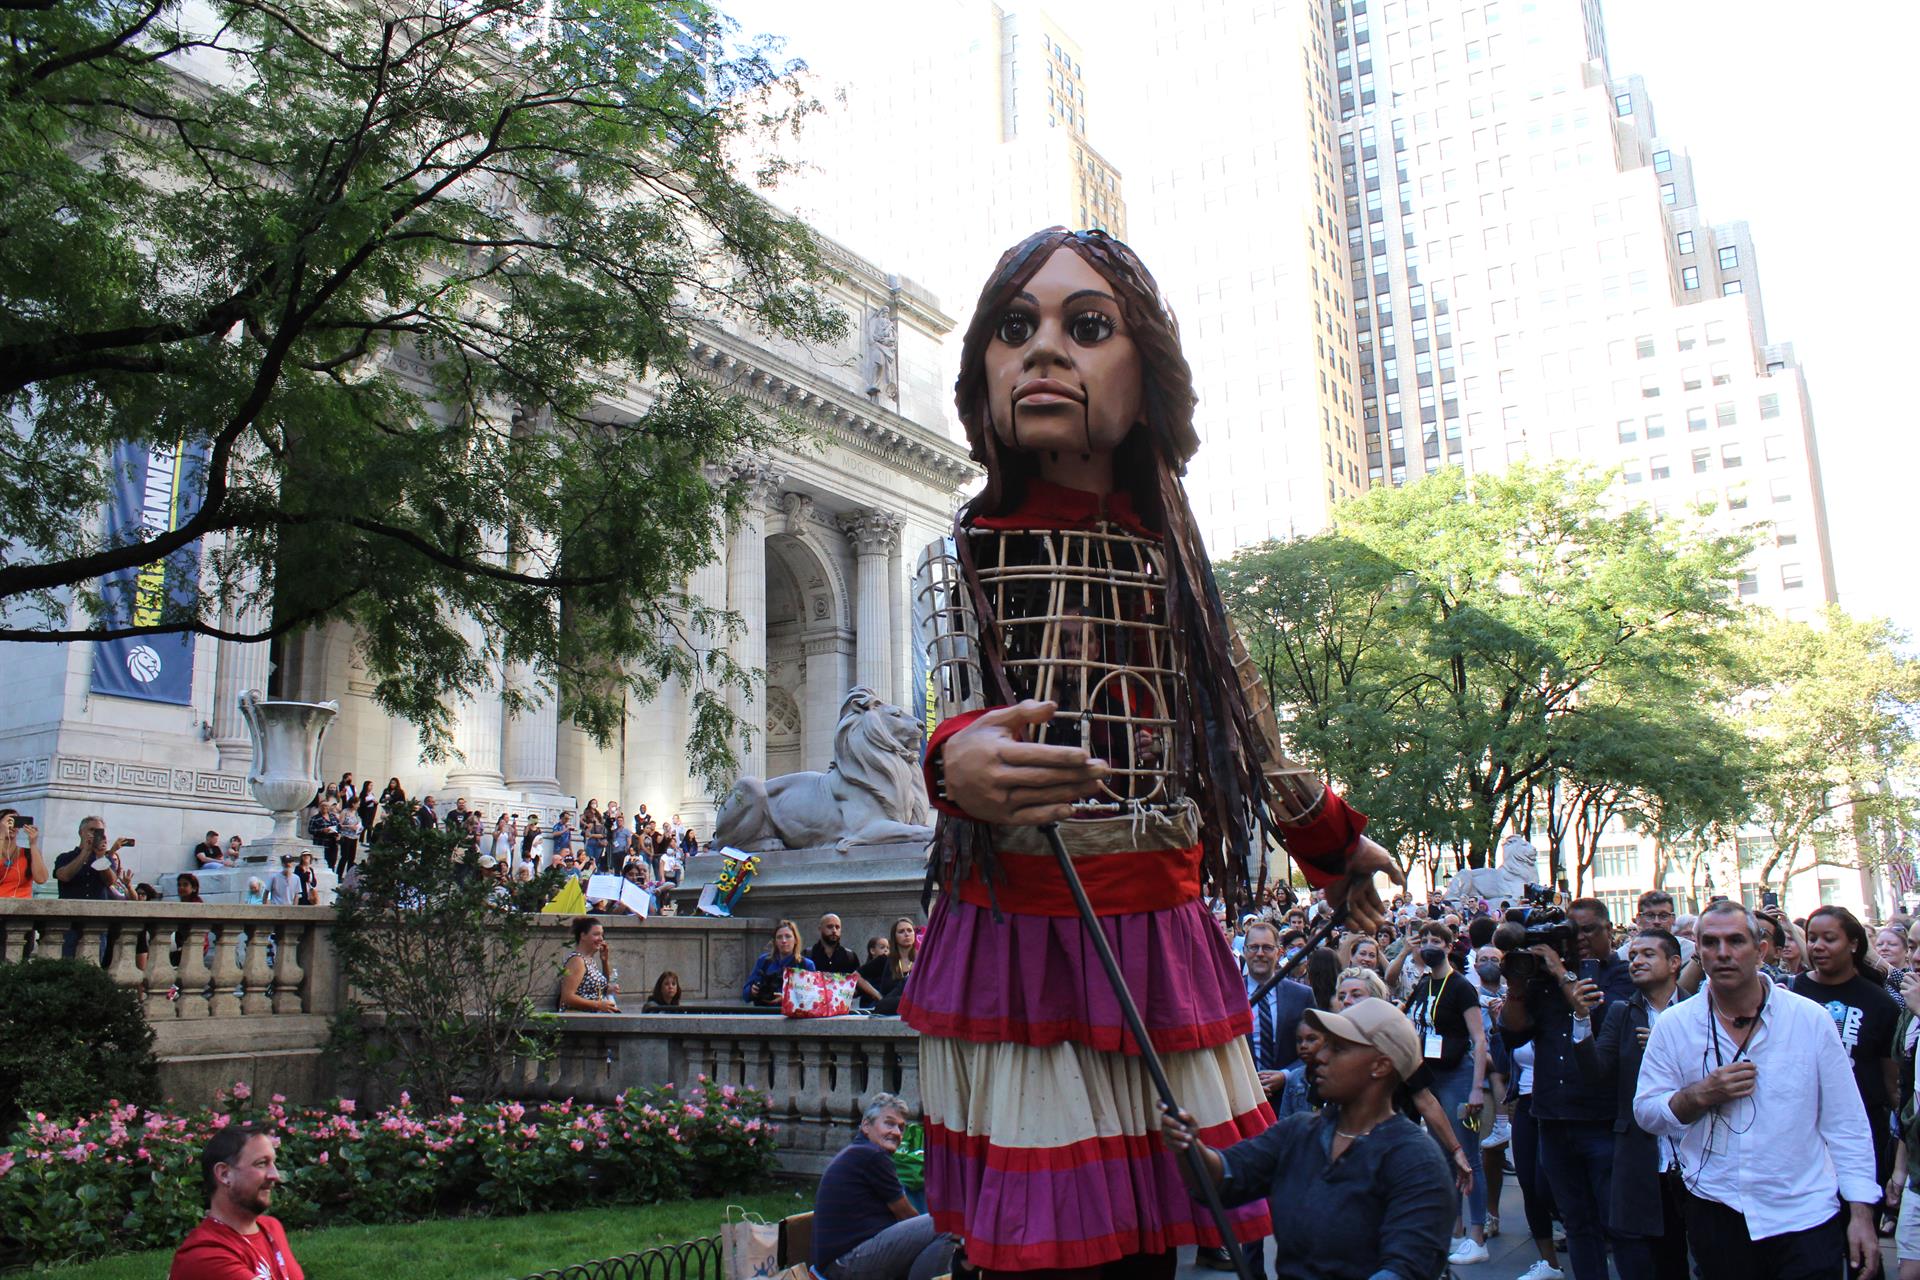 Cientos de personas reciben a la marioneta Amal, que en árabe significa esperanza, durante su marcha por las calles en el marco de la iniciativa 